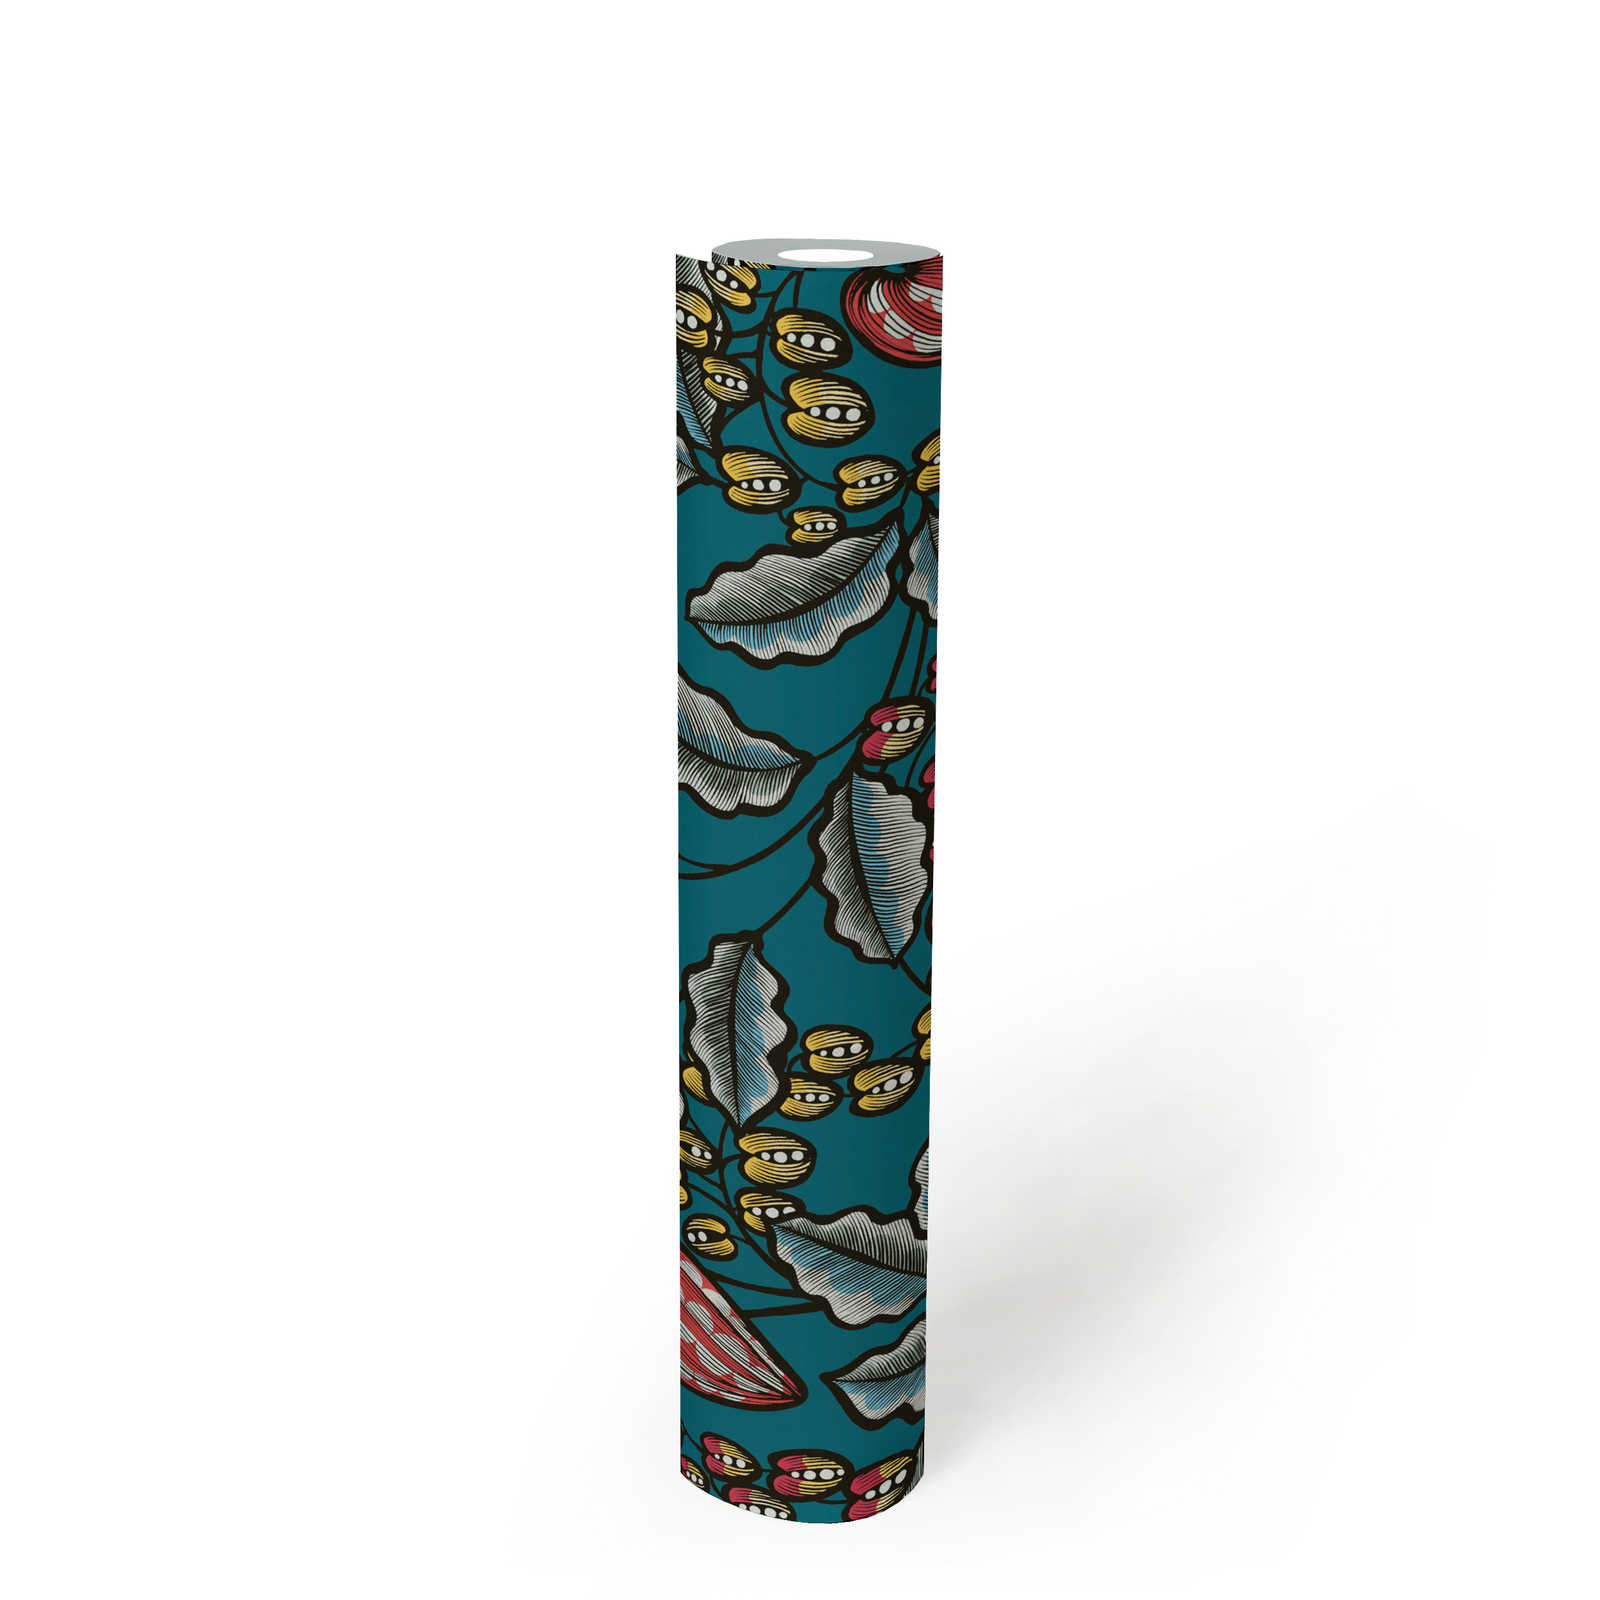             Florale Tapete Blätter & Blüten im modernen Kunststil – Blau, Gelb, Rot
        